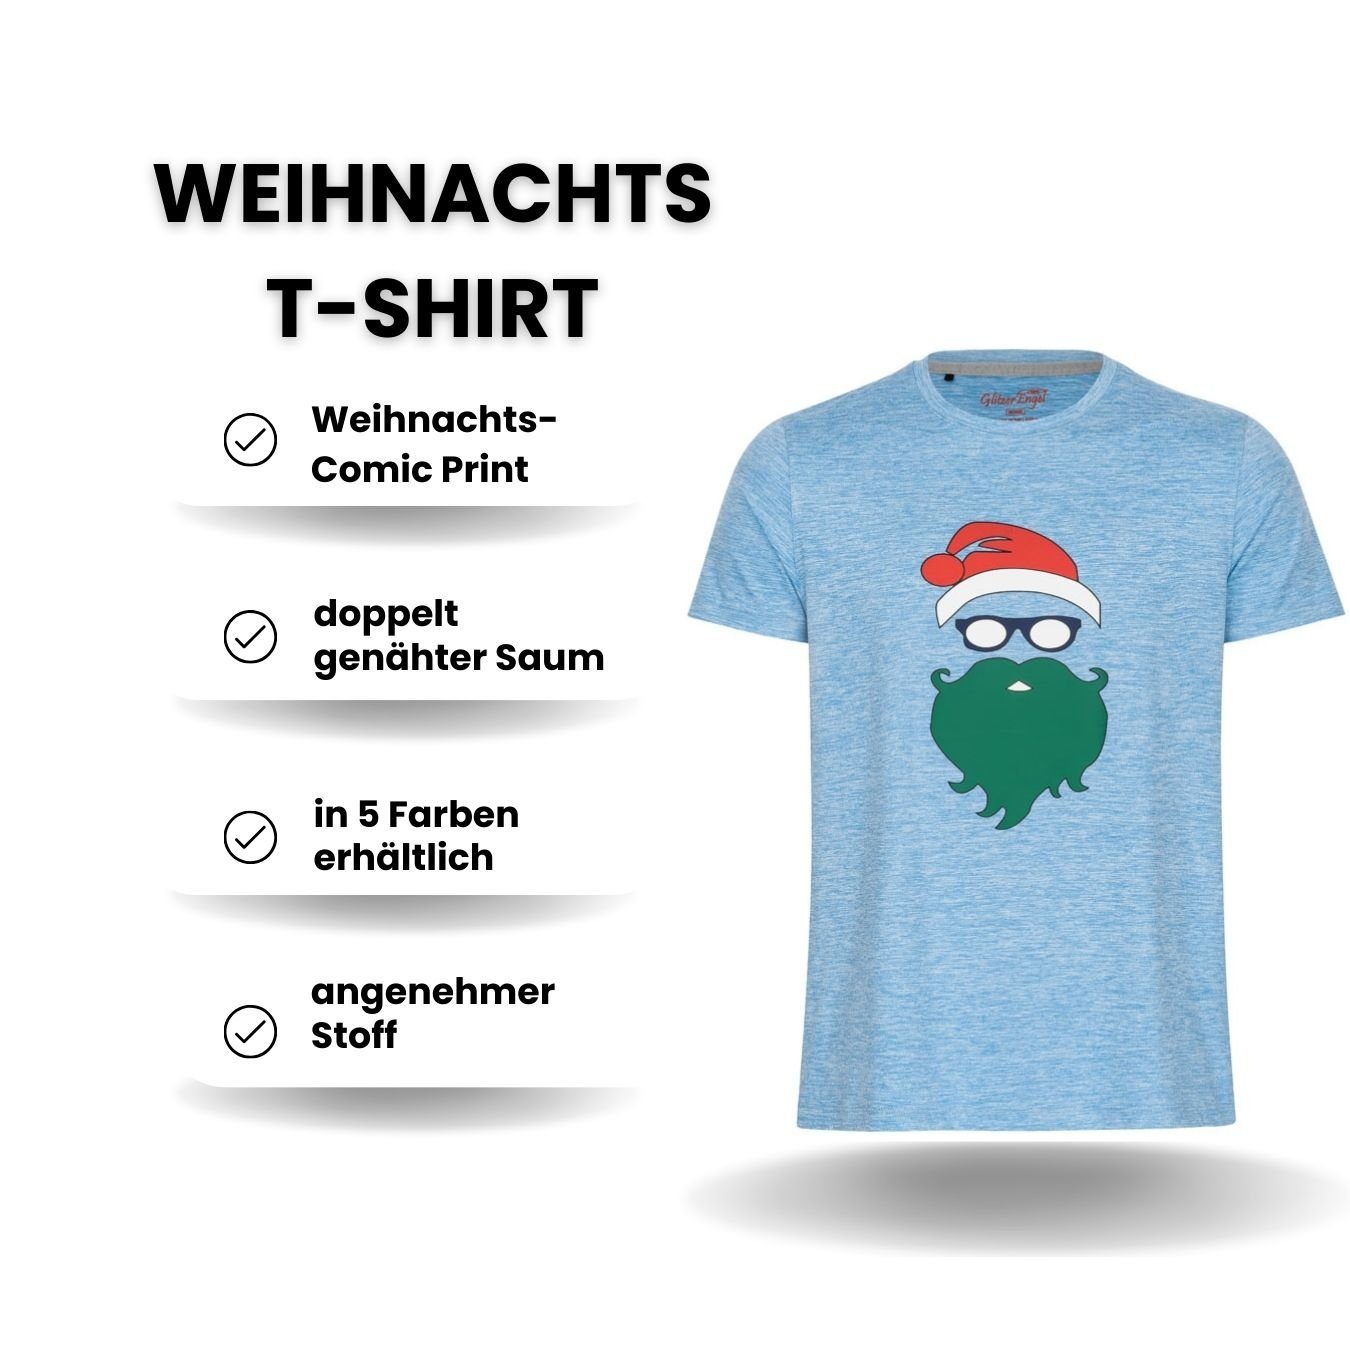 Berlinsel T-Shirt Printshirt Weihnachtsshirt Herren Weihnachtsoutfit Männer blau Weihnachtsfeier, Weihnachtsgeschenk, Weihnachtsfoto